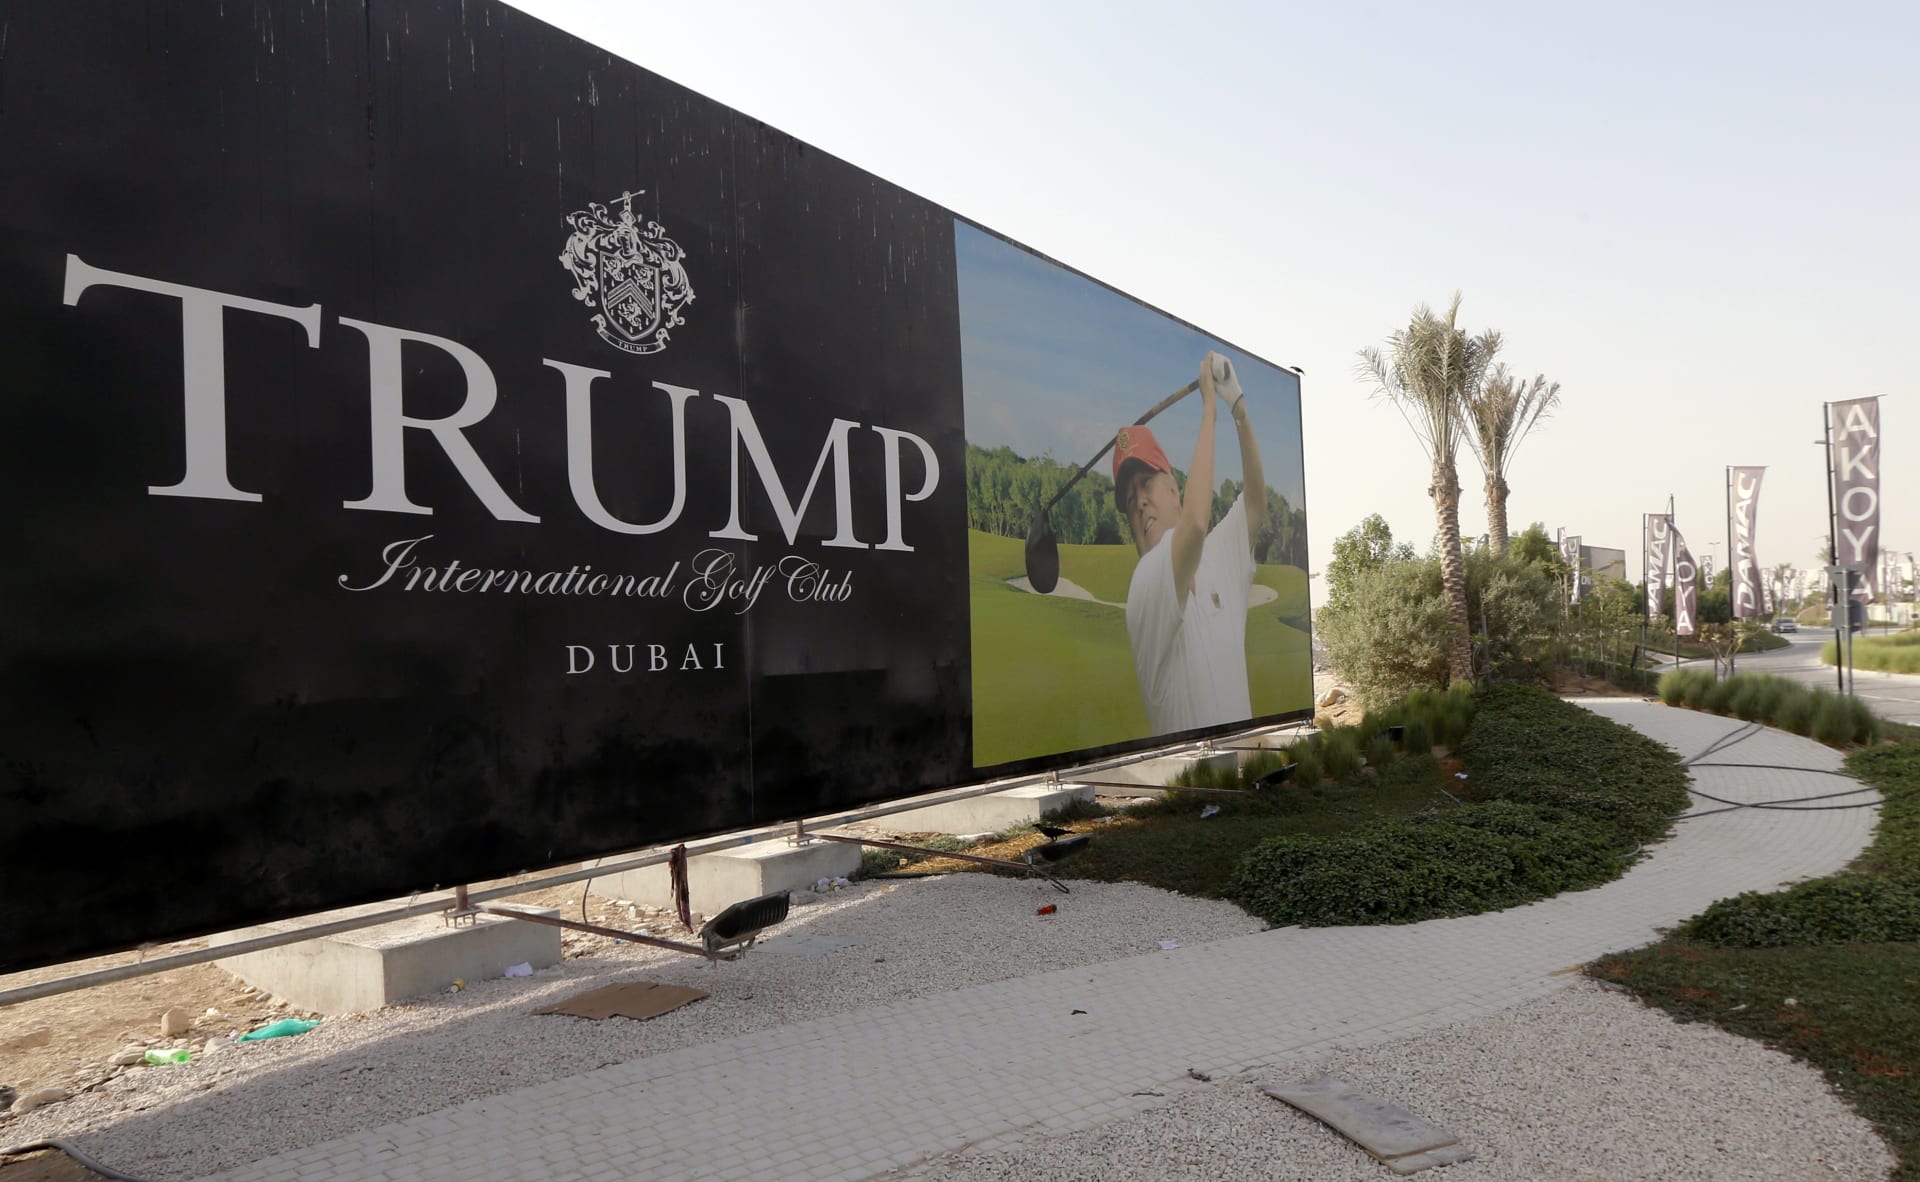 داماك: تعليقات ترامب لن تؤثر على مشروع نادي الغولف في دبي.. والحبتور: عندما يرافق القوة الجهل والخداع يُنتج ذلك مزيجا ساما 